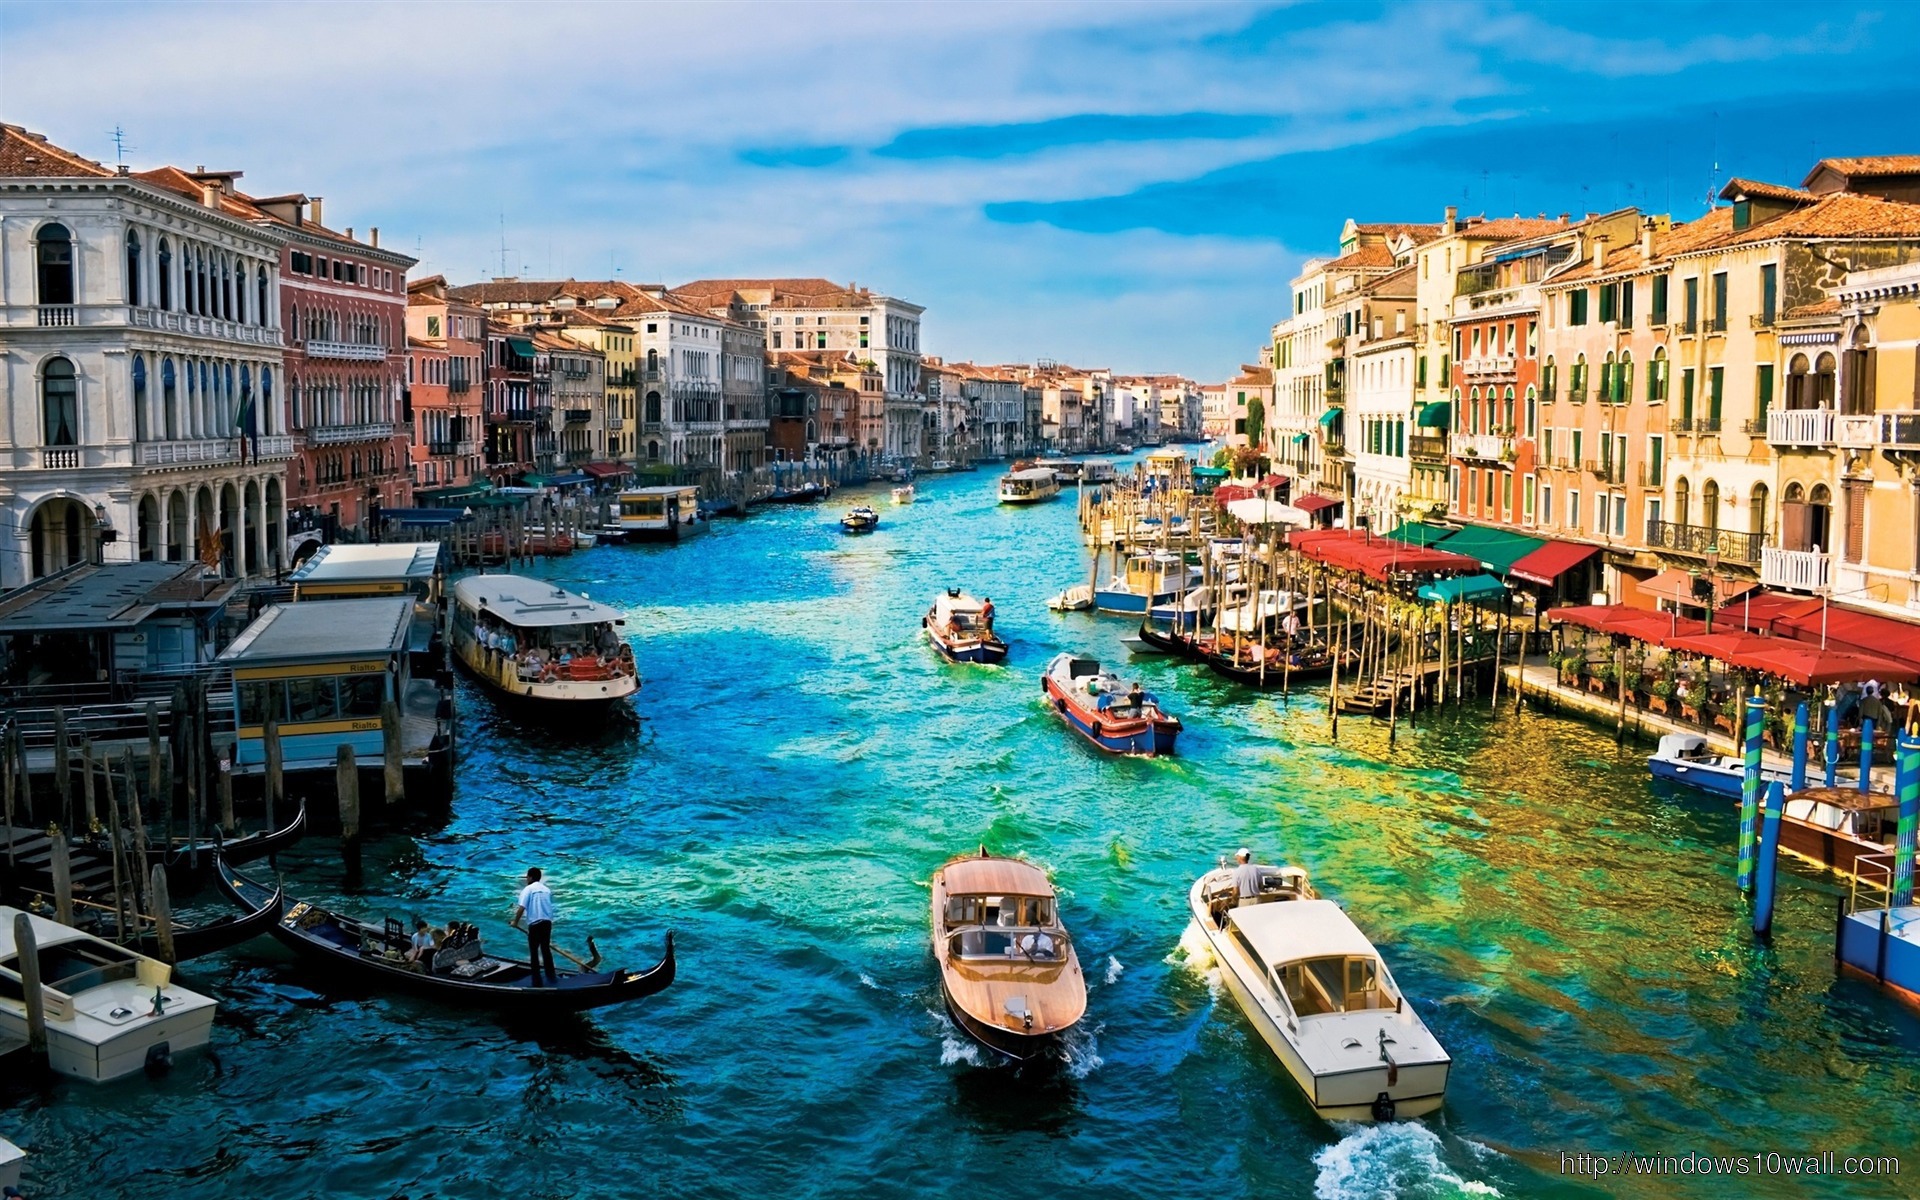 Venice Images